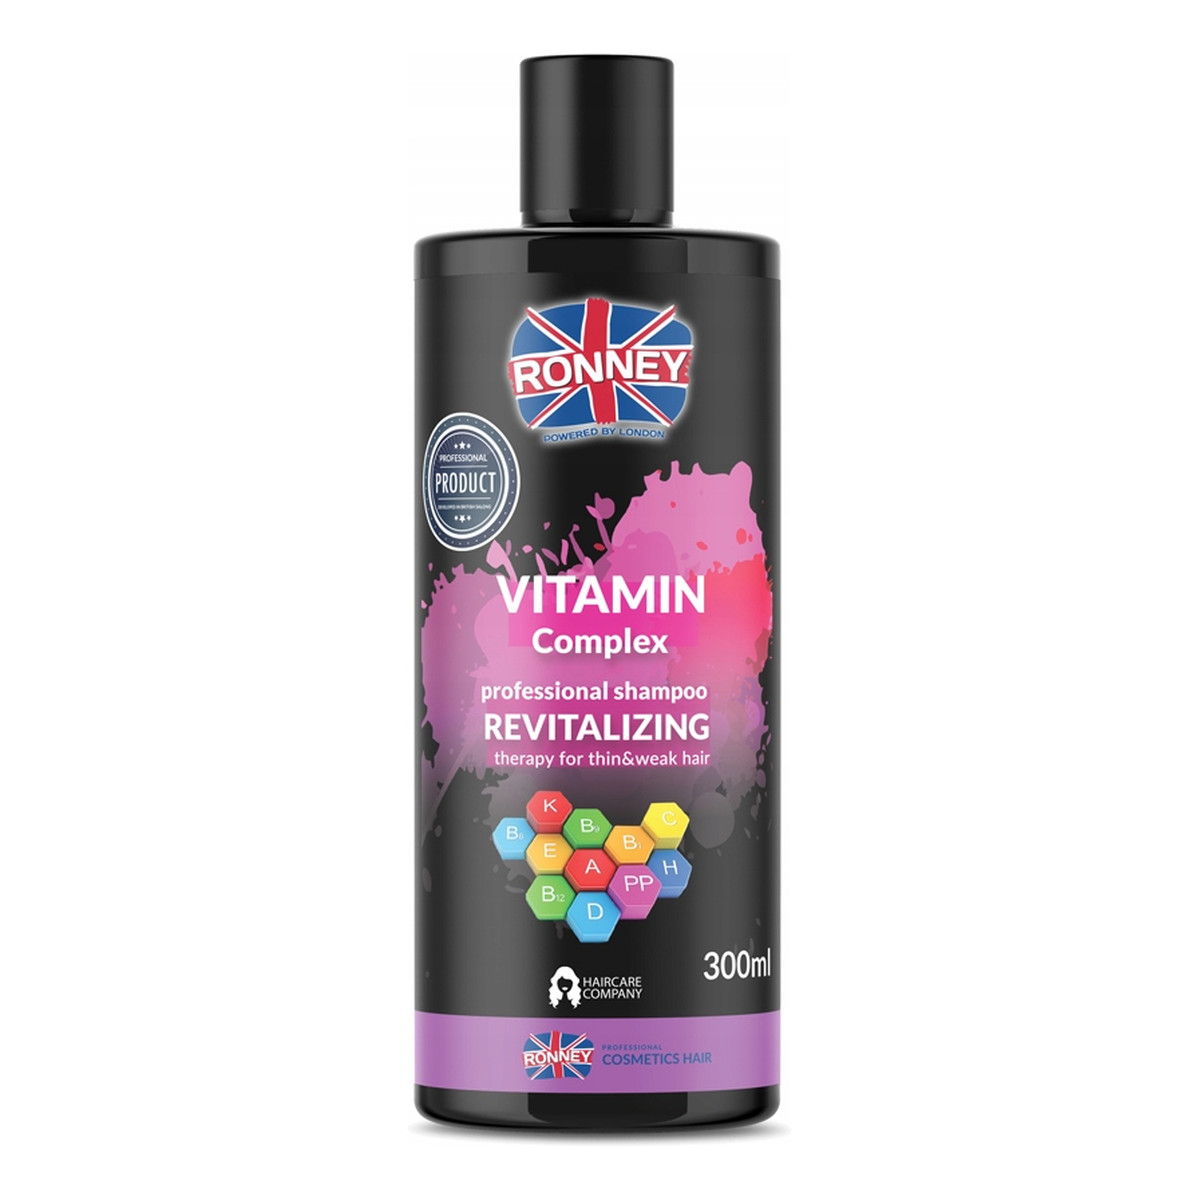 Ronney Vitamin complex professional shampoo revitalizing rewitalizujący szampon do włosów z kompleksem witamin 300ml